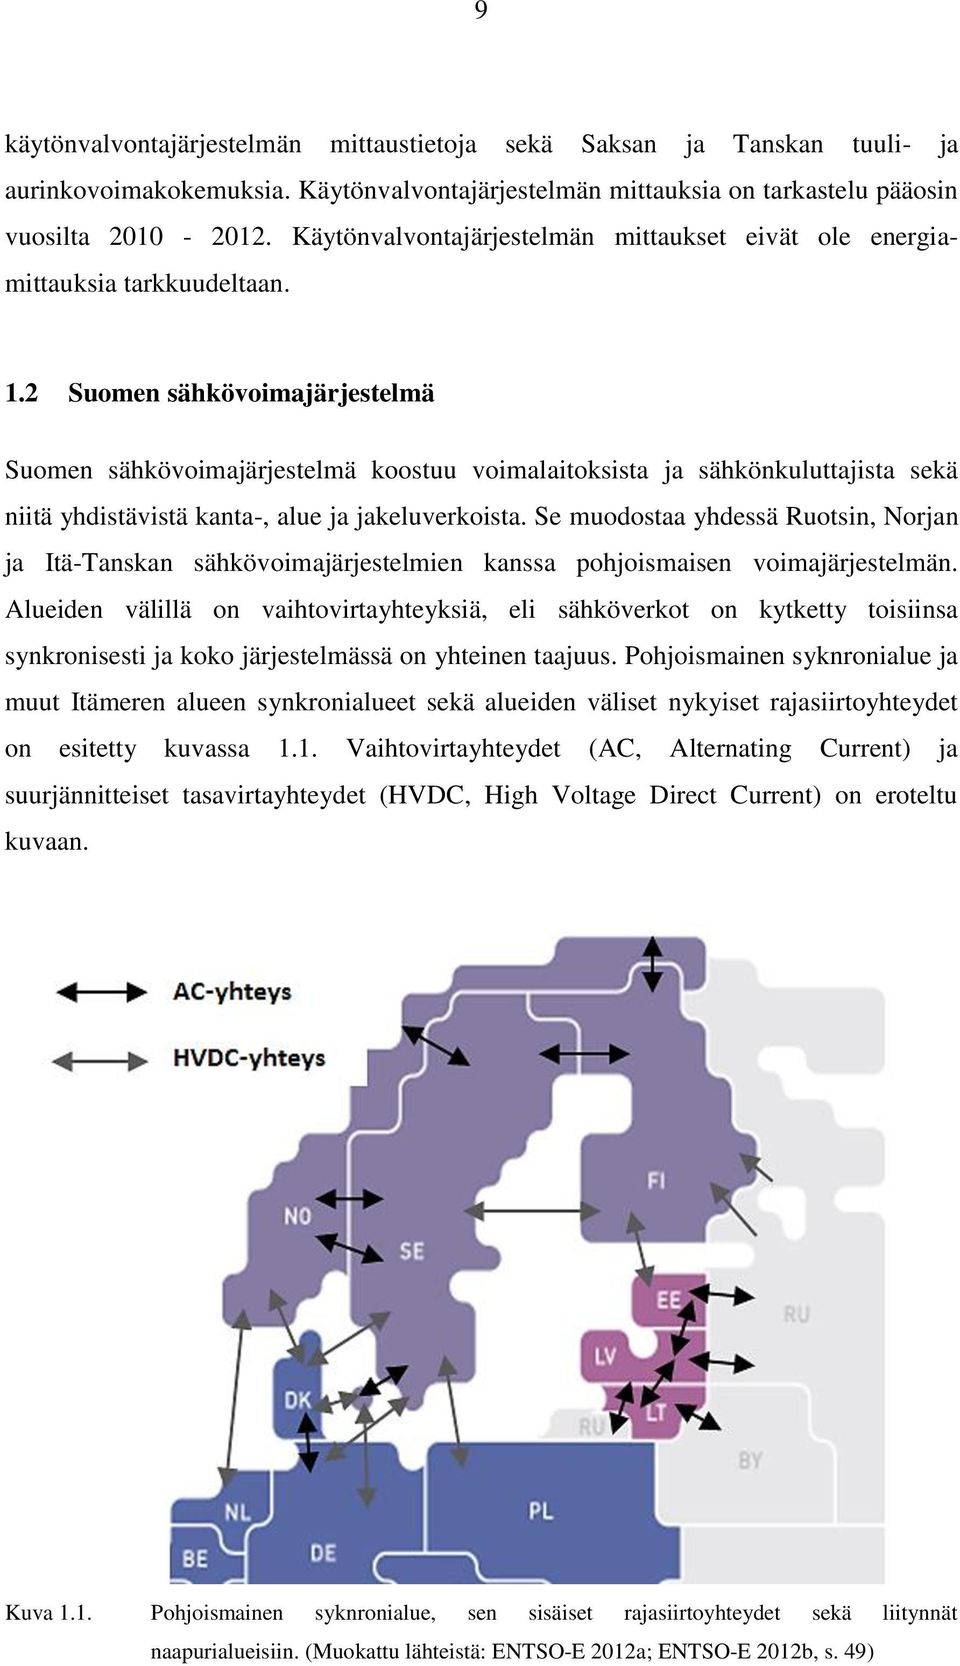 2 Suomen sähkövoimajärjestelmä Suomen sähkövoimajärjestelmä koostuu voimalaitoksista ja sähkönkuluttajista sekä niitä yhdistävistä kanta-, alue ja jakeluverkoista.